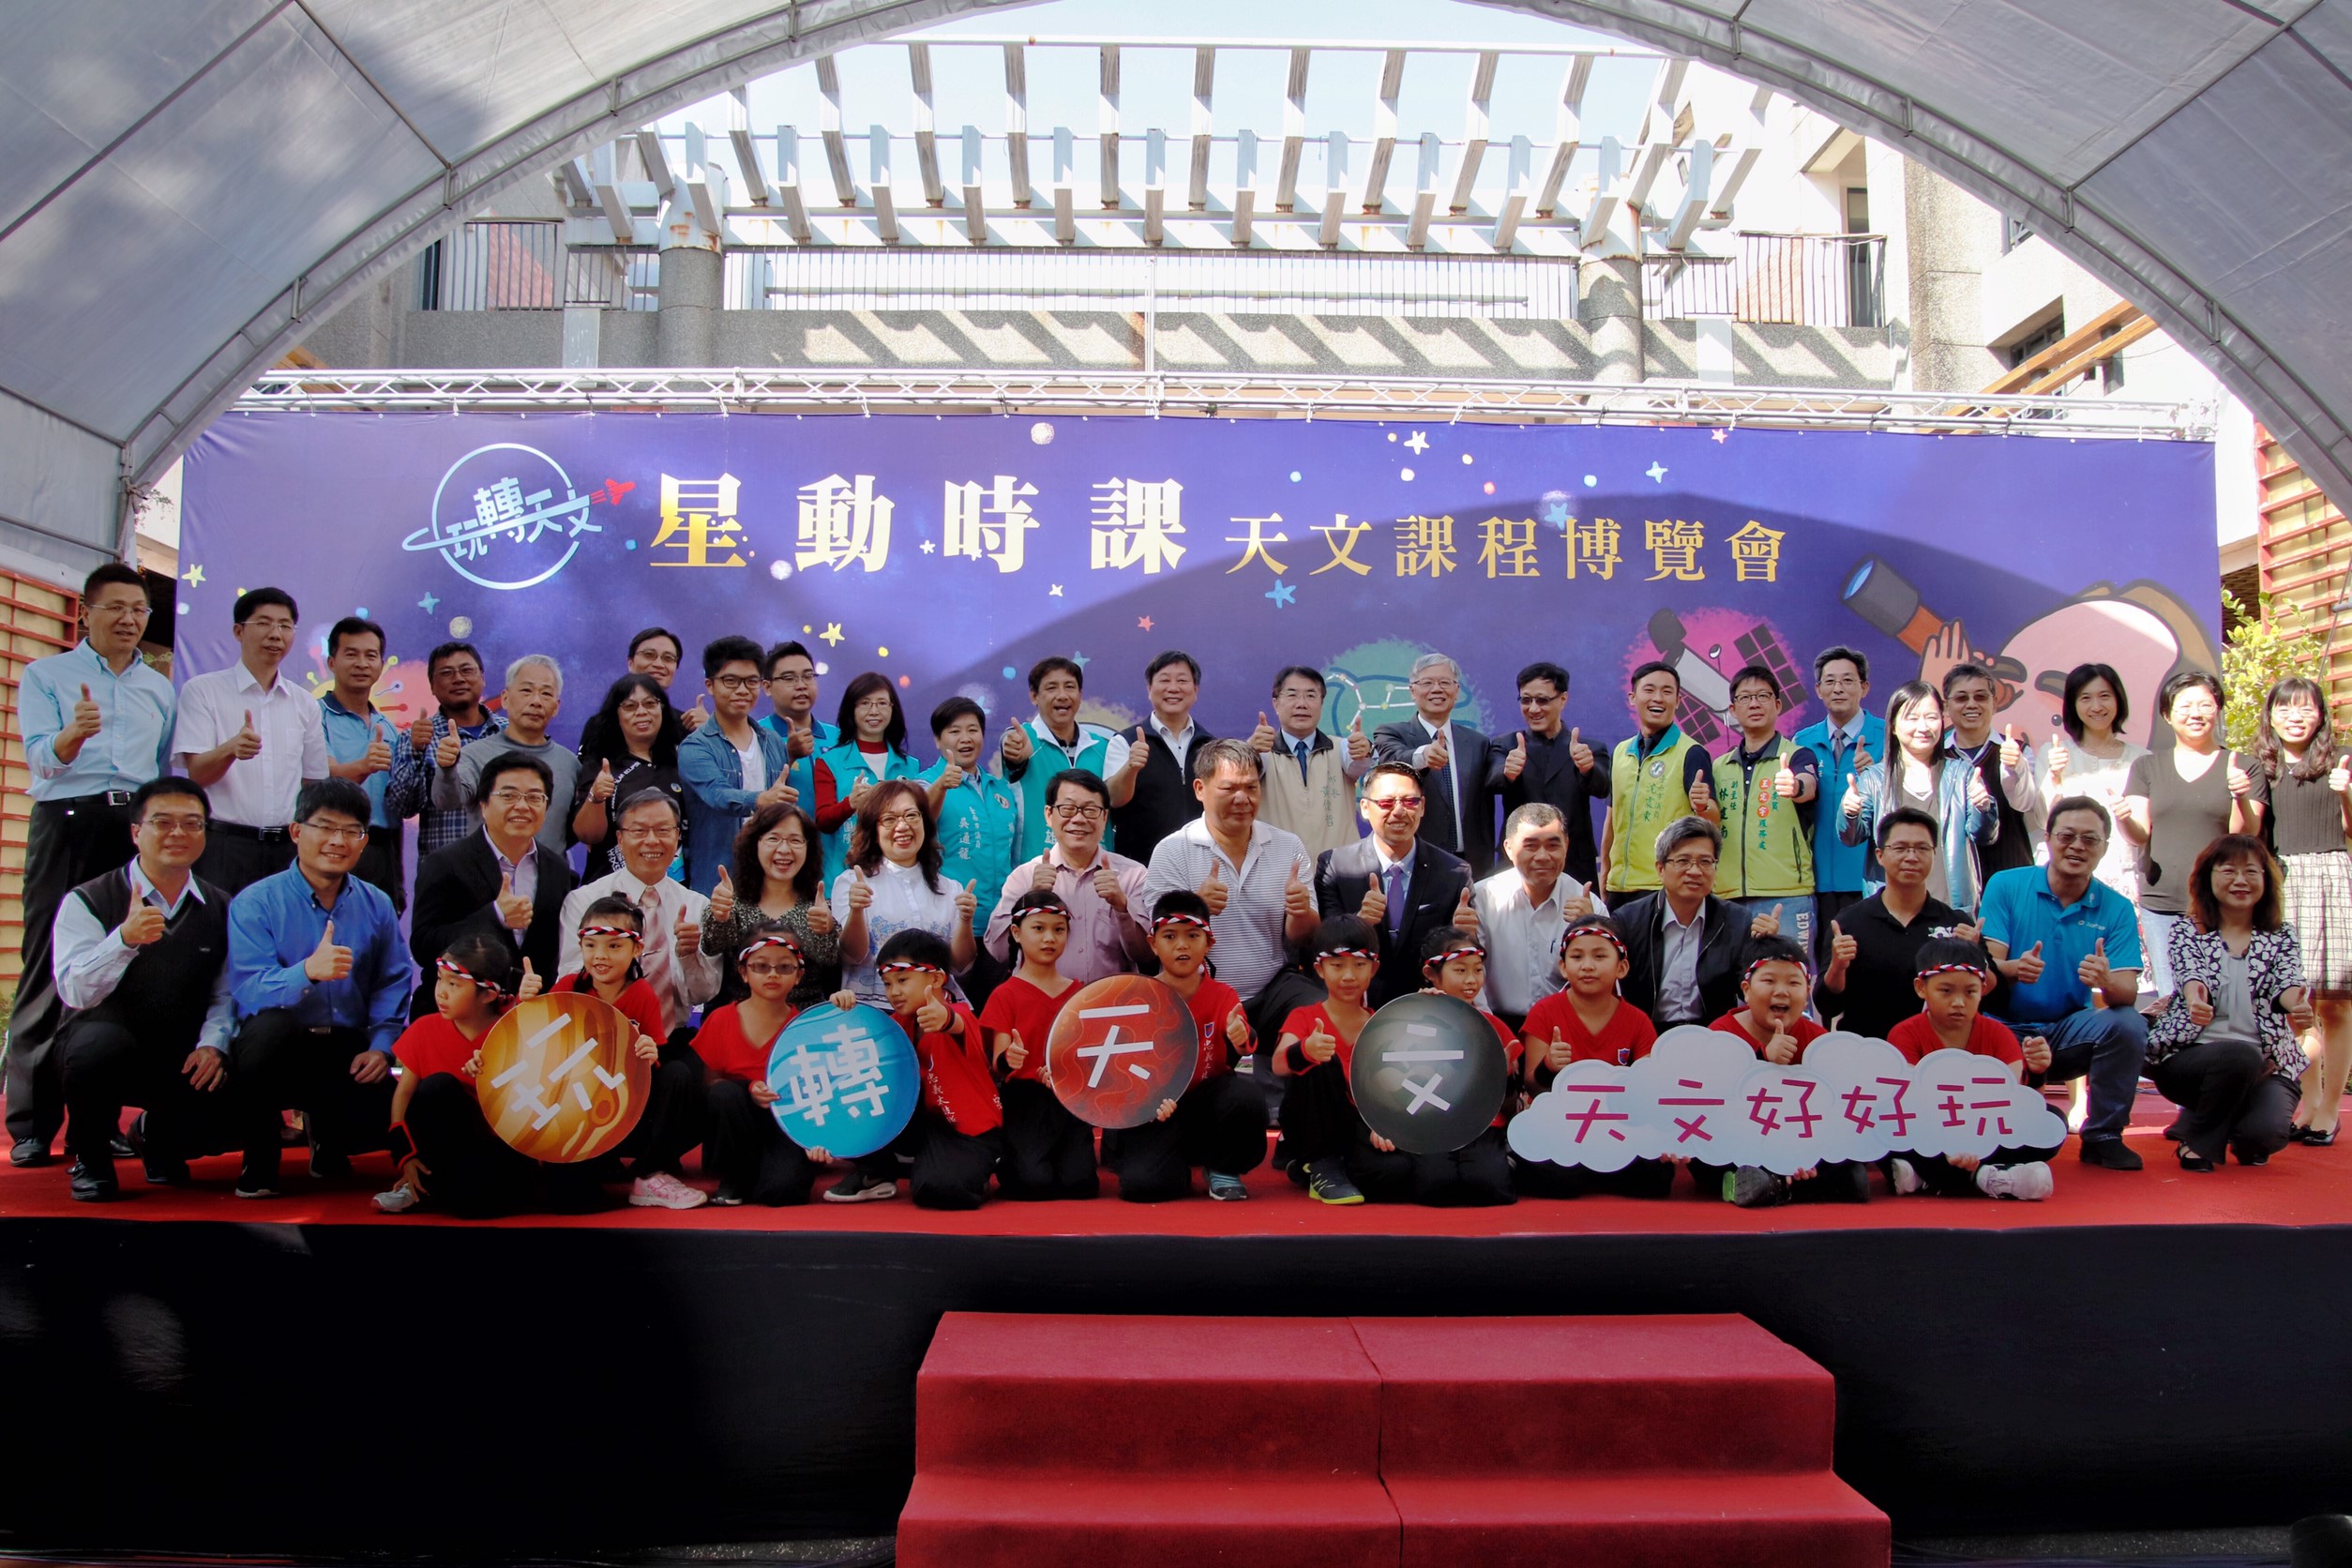 台南市政府規劃的「玩轉天文」星動時課天文課程博覽會，吸引數百位許多大小朋友共同參與。陳薏安攝